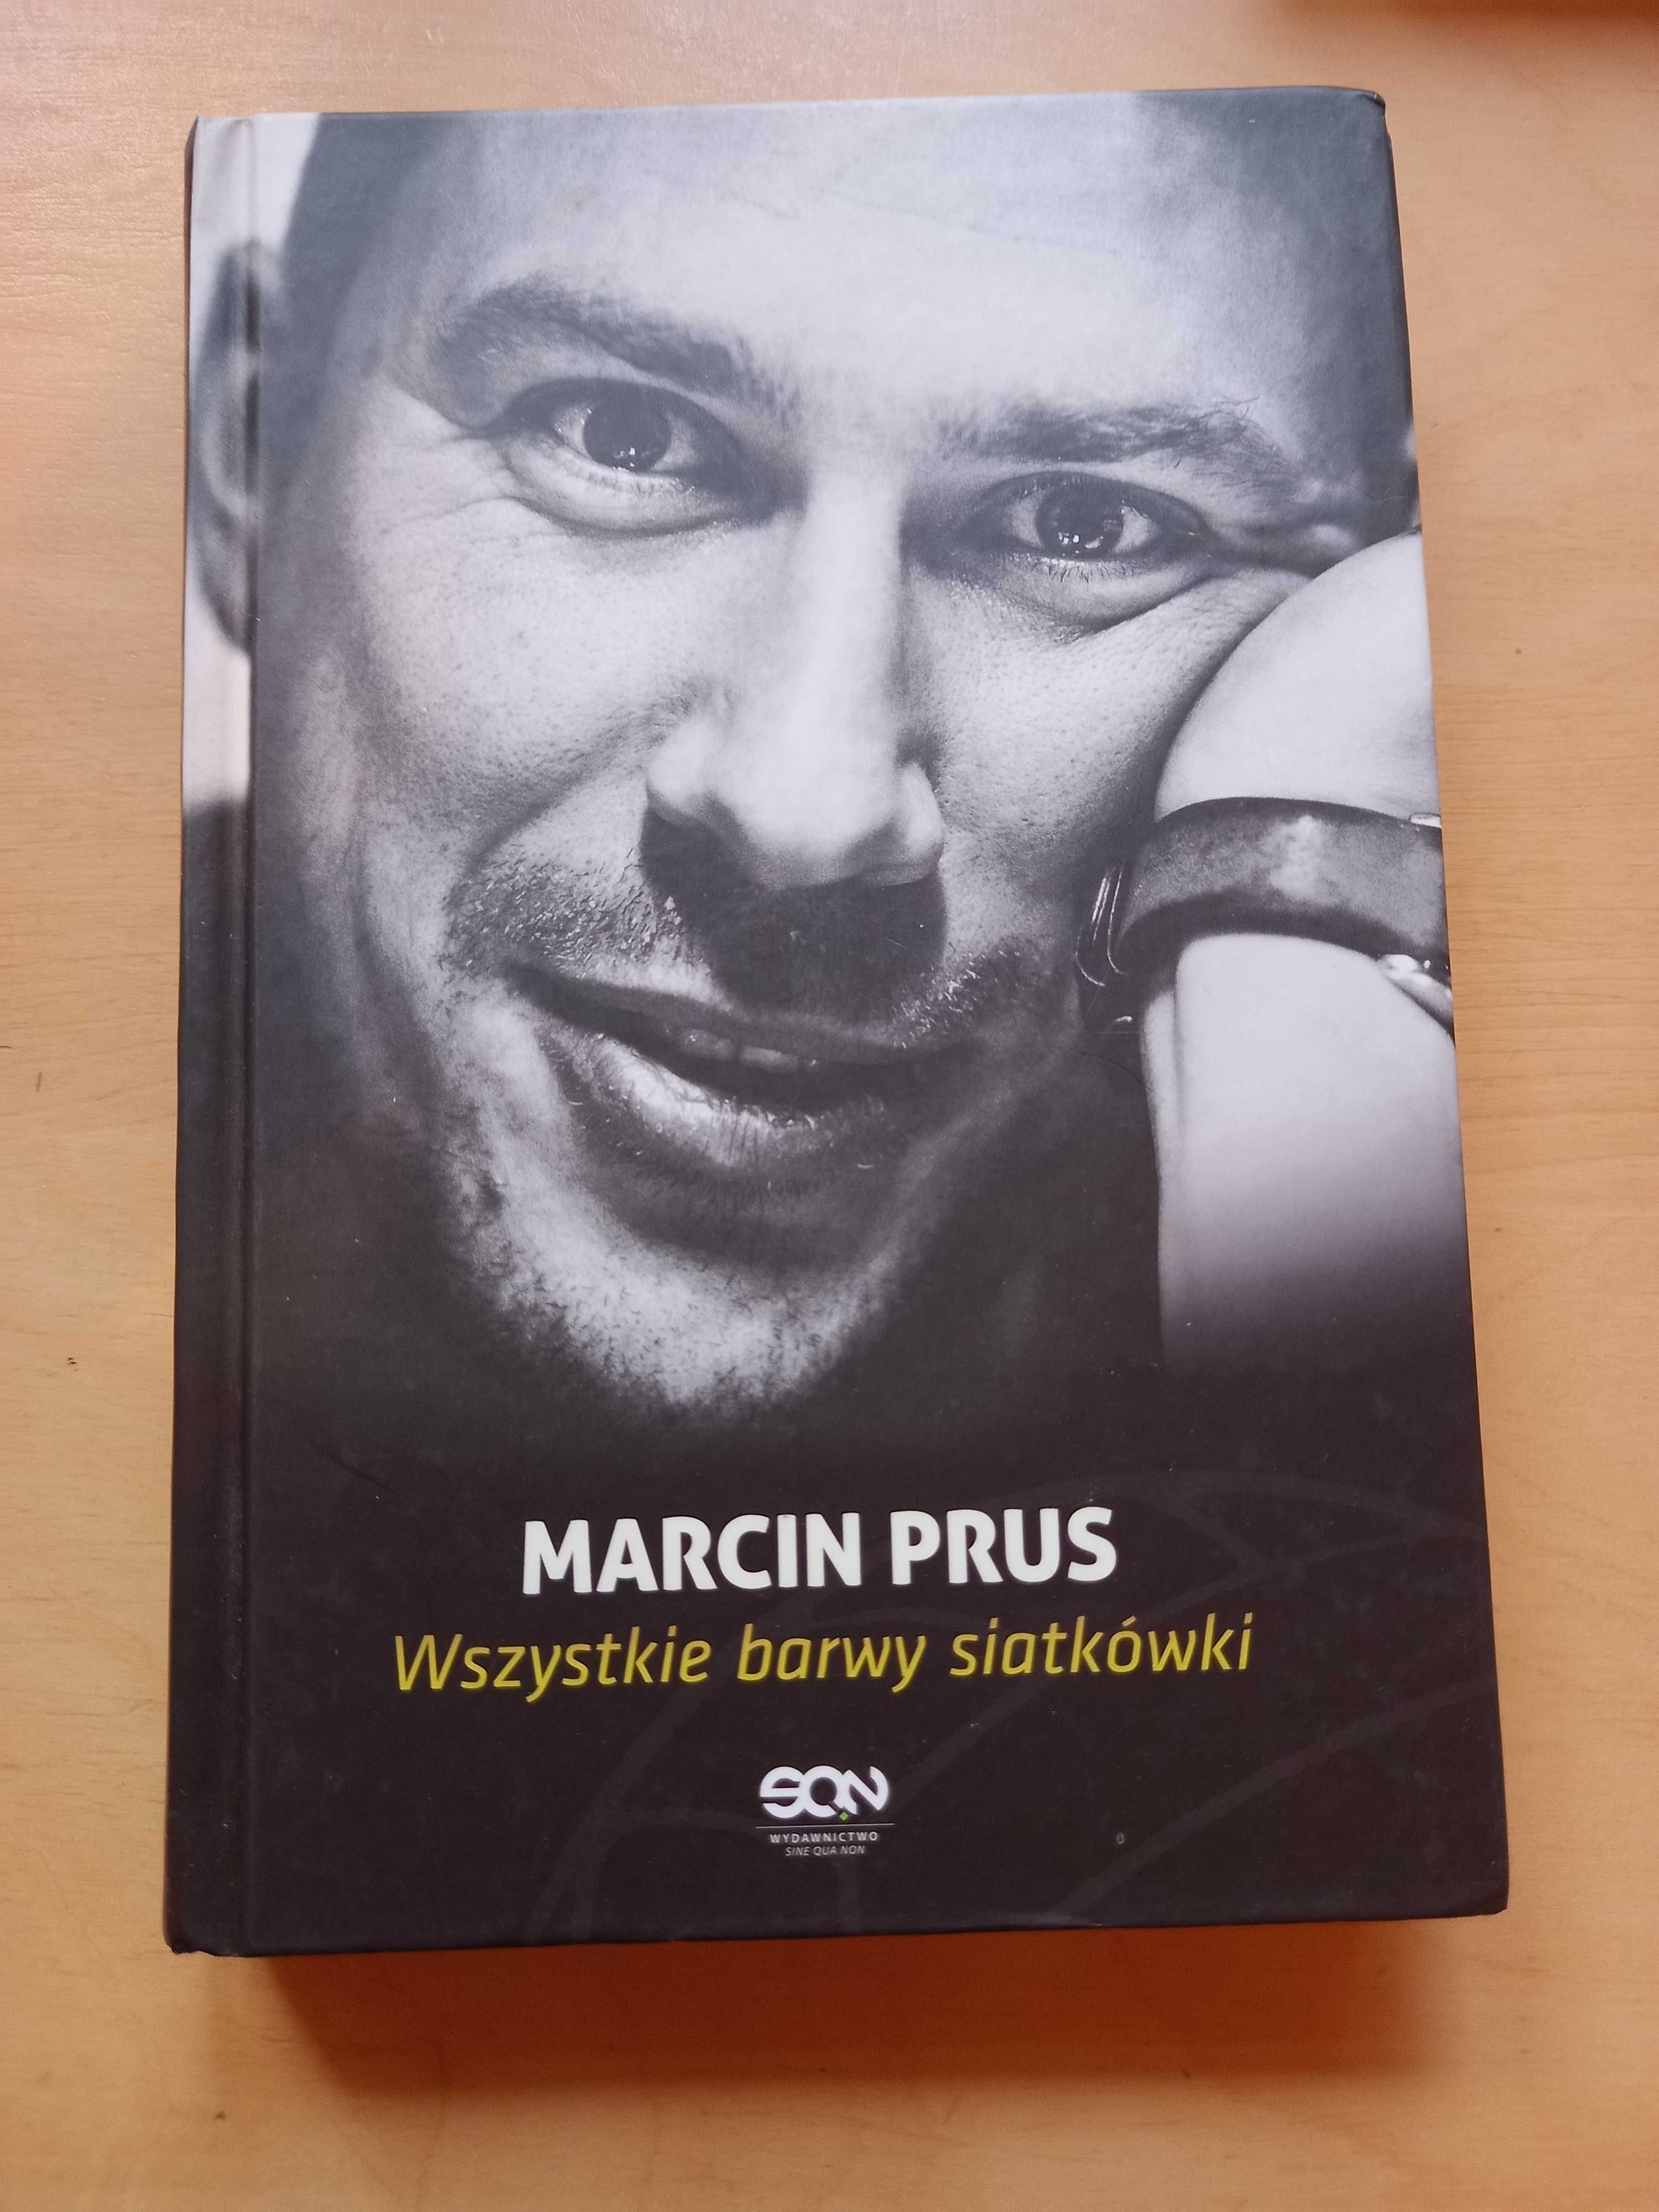 Sprzedam książkę "Wszystkie barwy siatkówki" Marcina Prusa